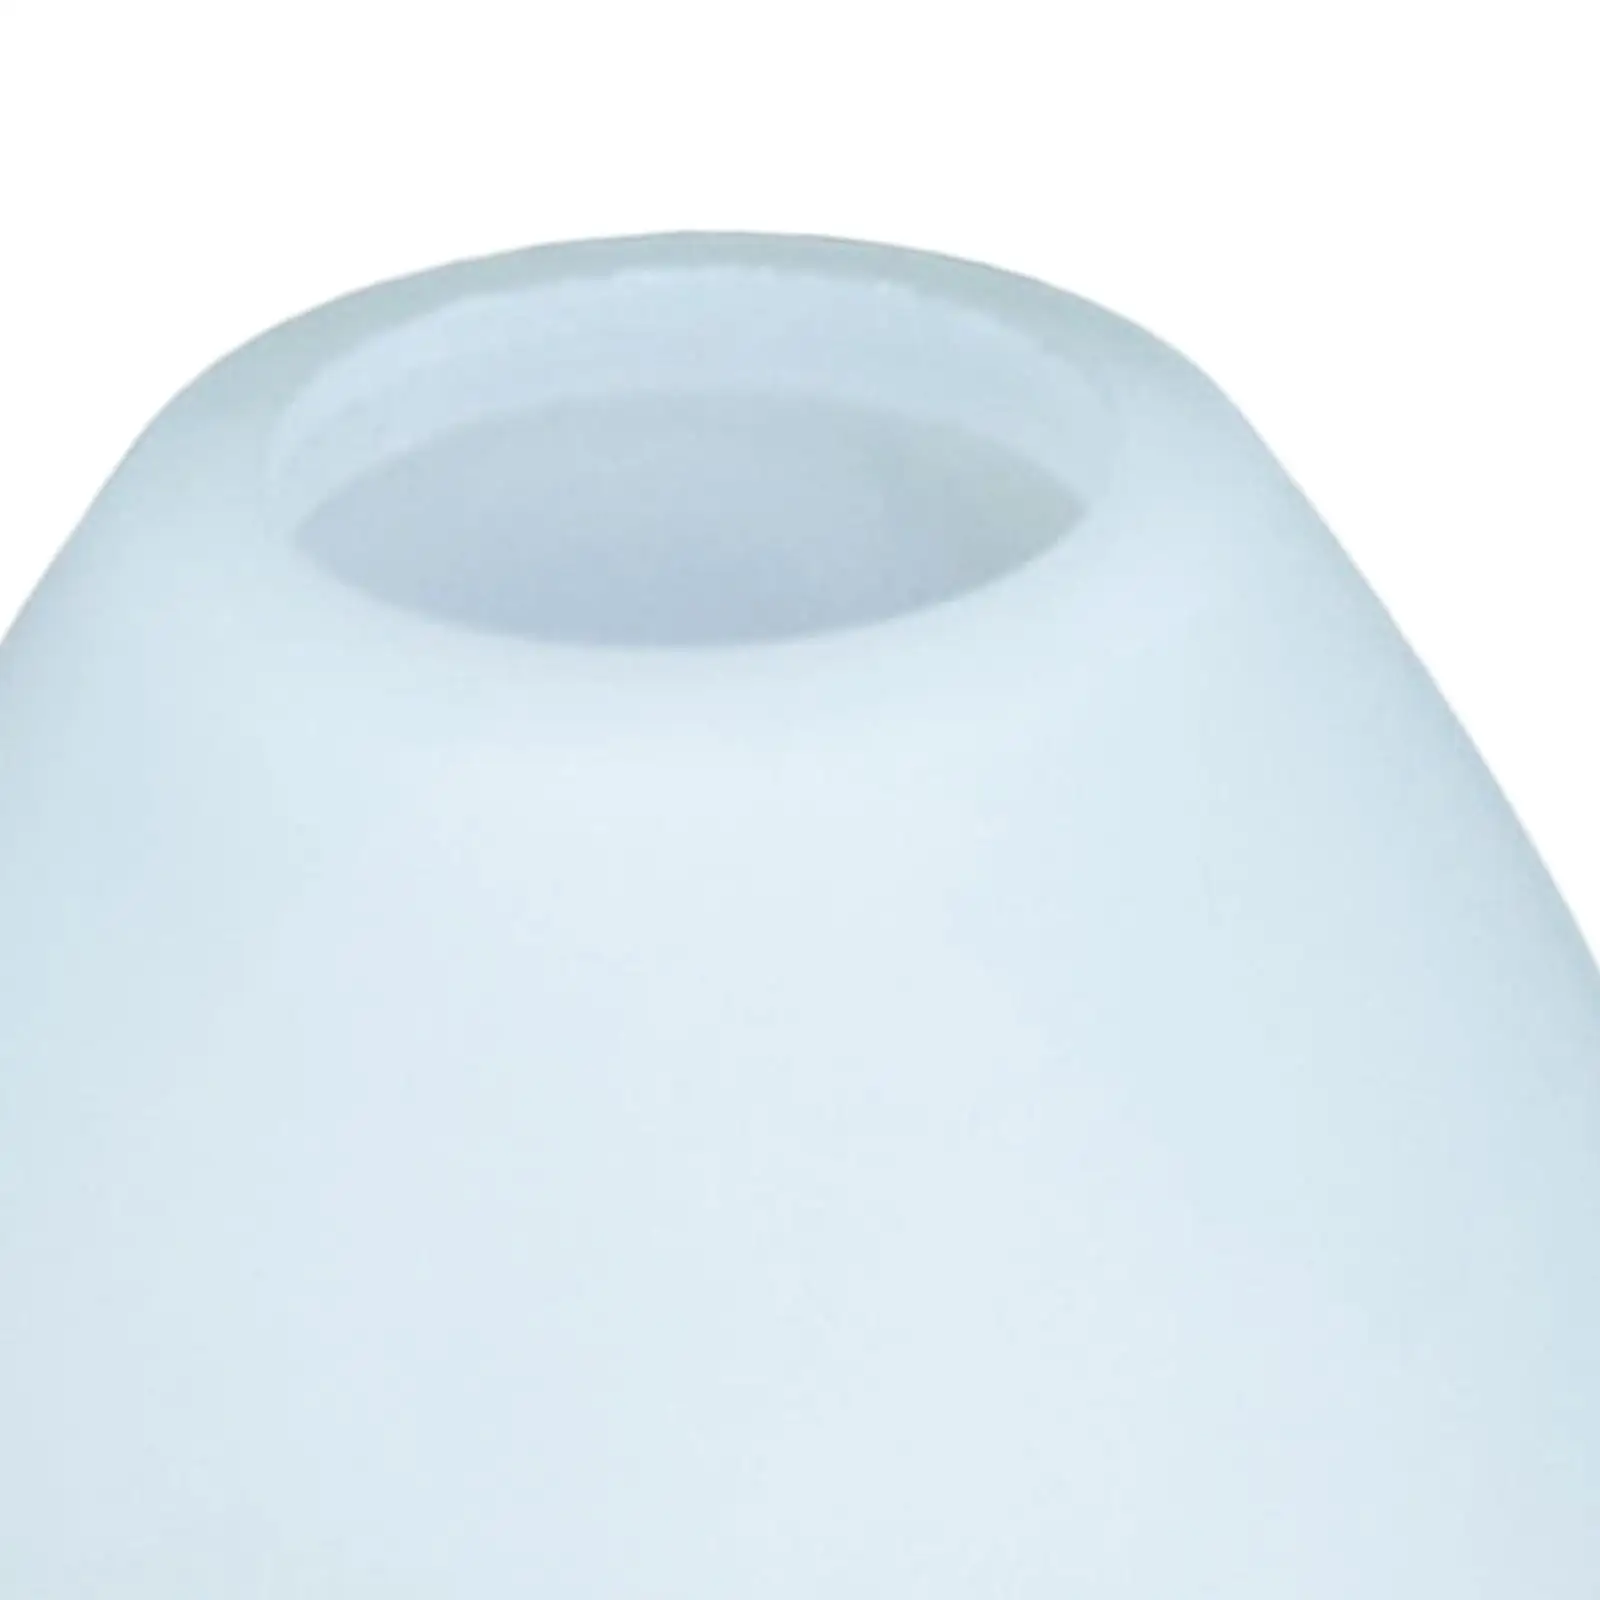 Modern Pendant Lamp Shade Ceiling Light Shade Light Cover for Kitchen Decor